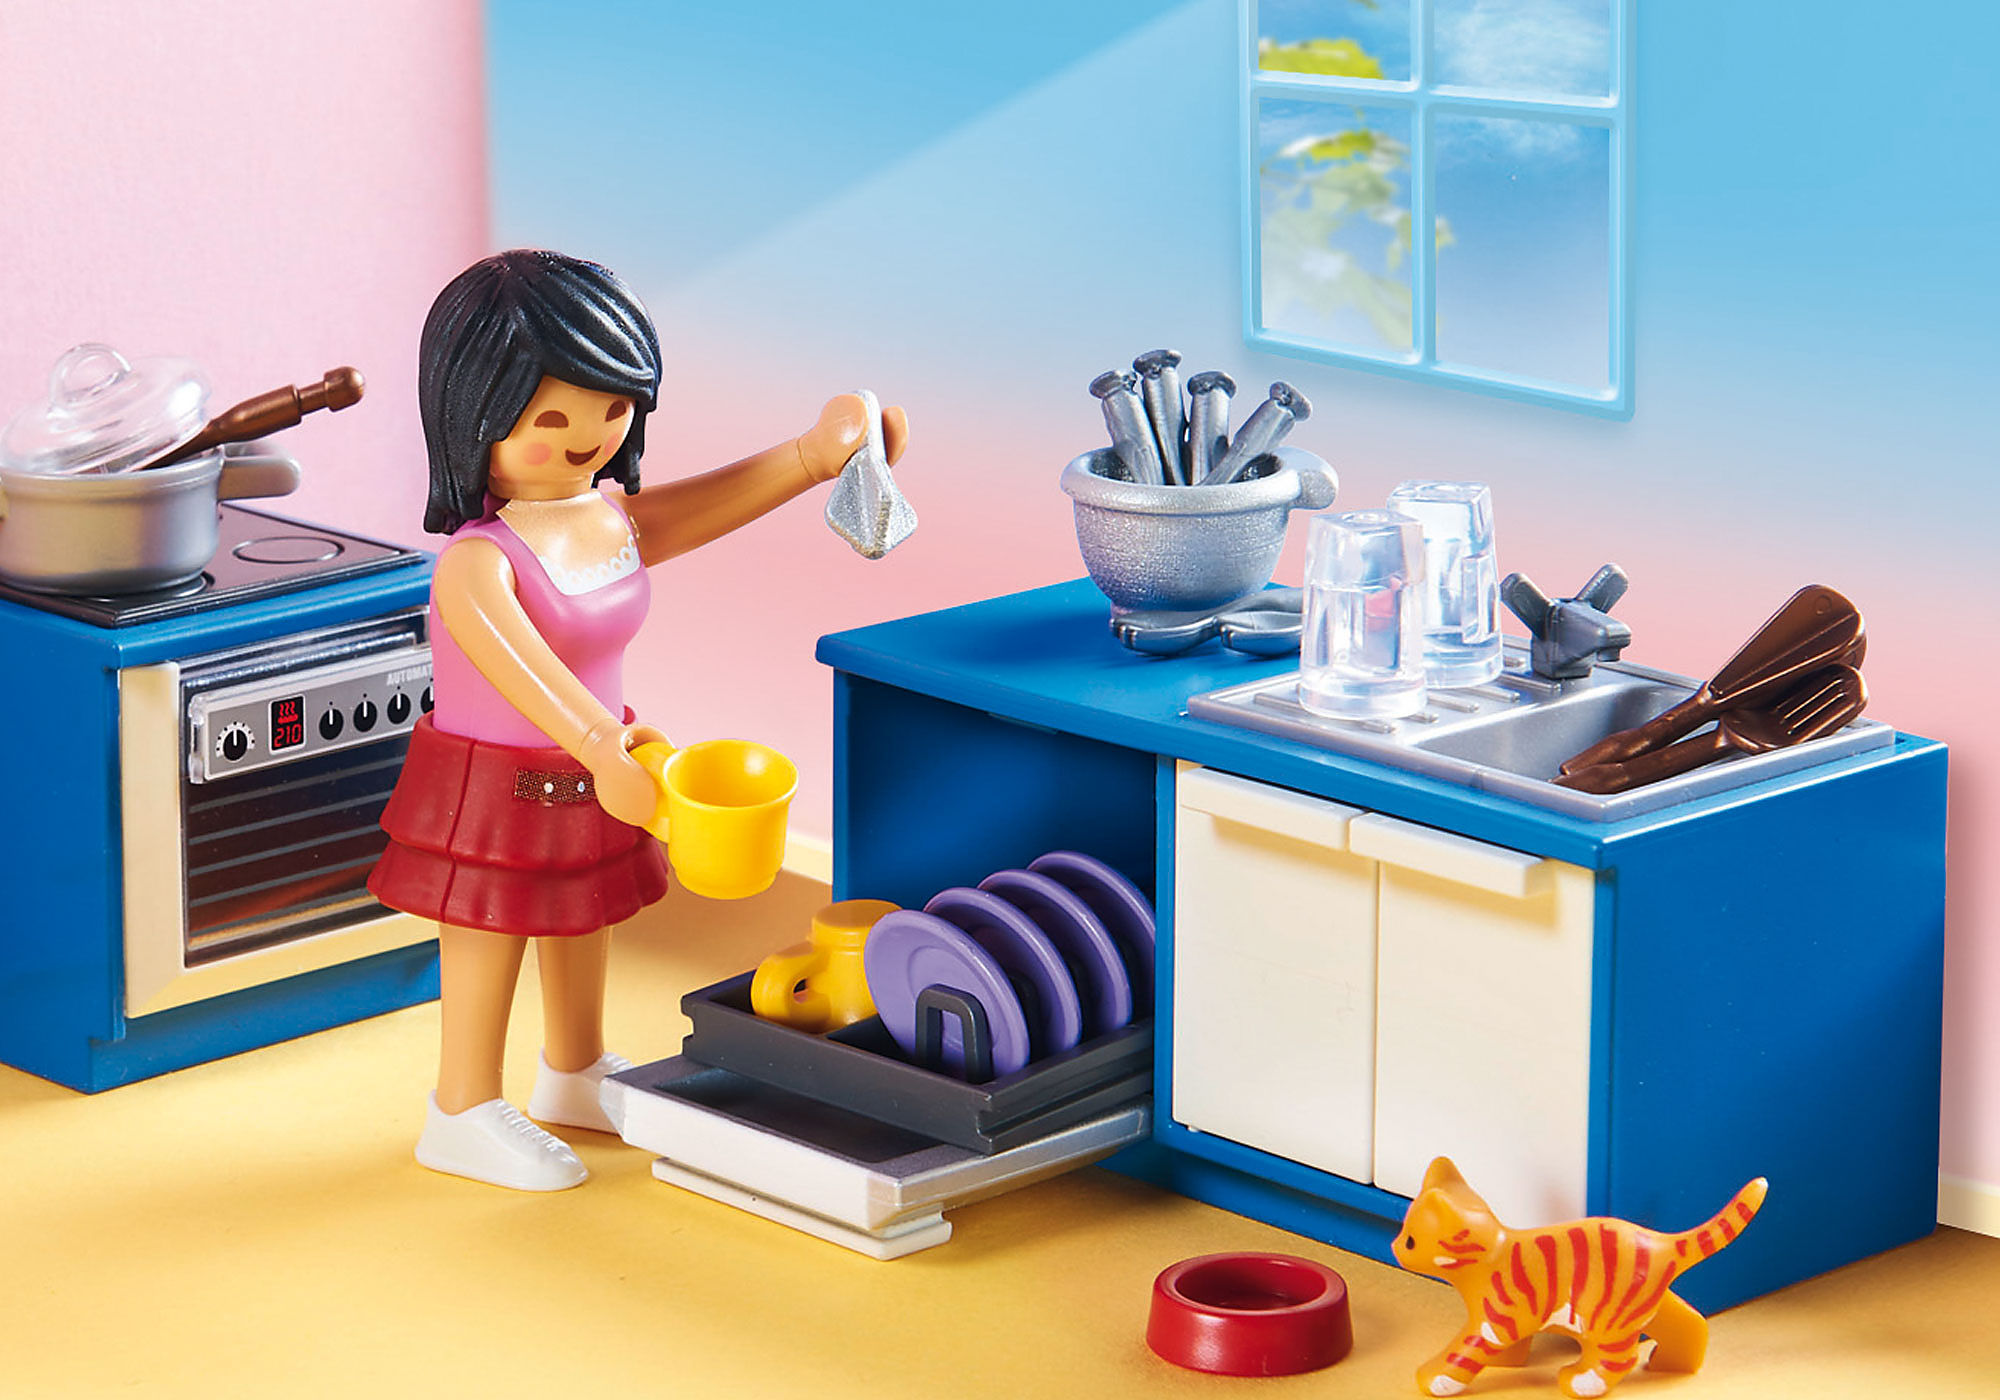 Playmobil 70206 Cuisine familiale - Dollhouse- La Maison